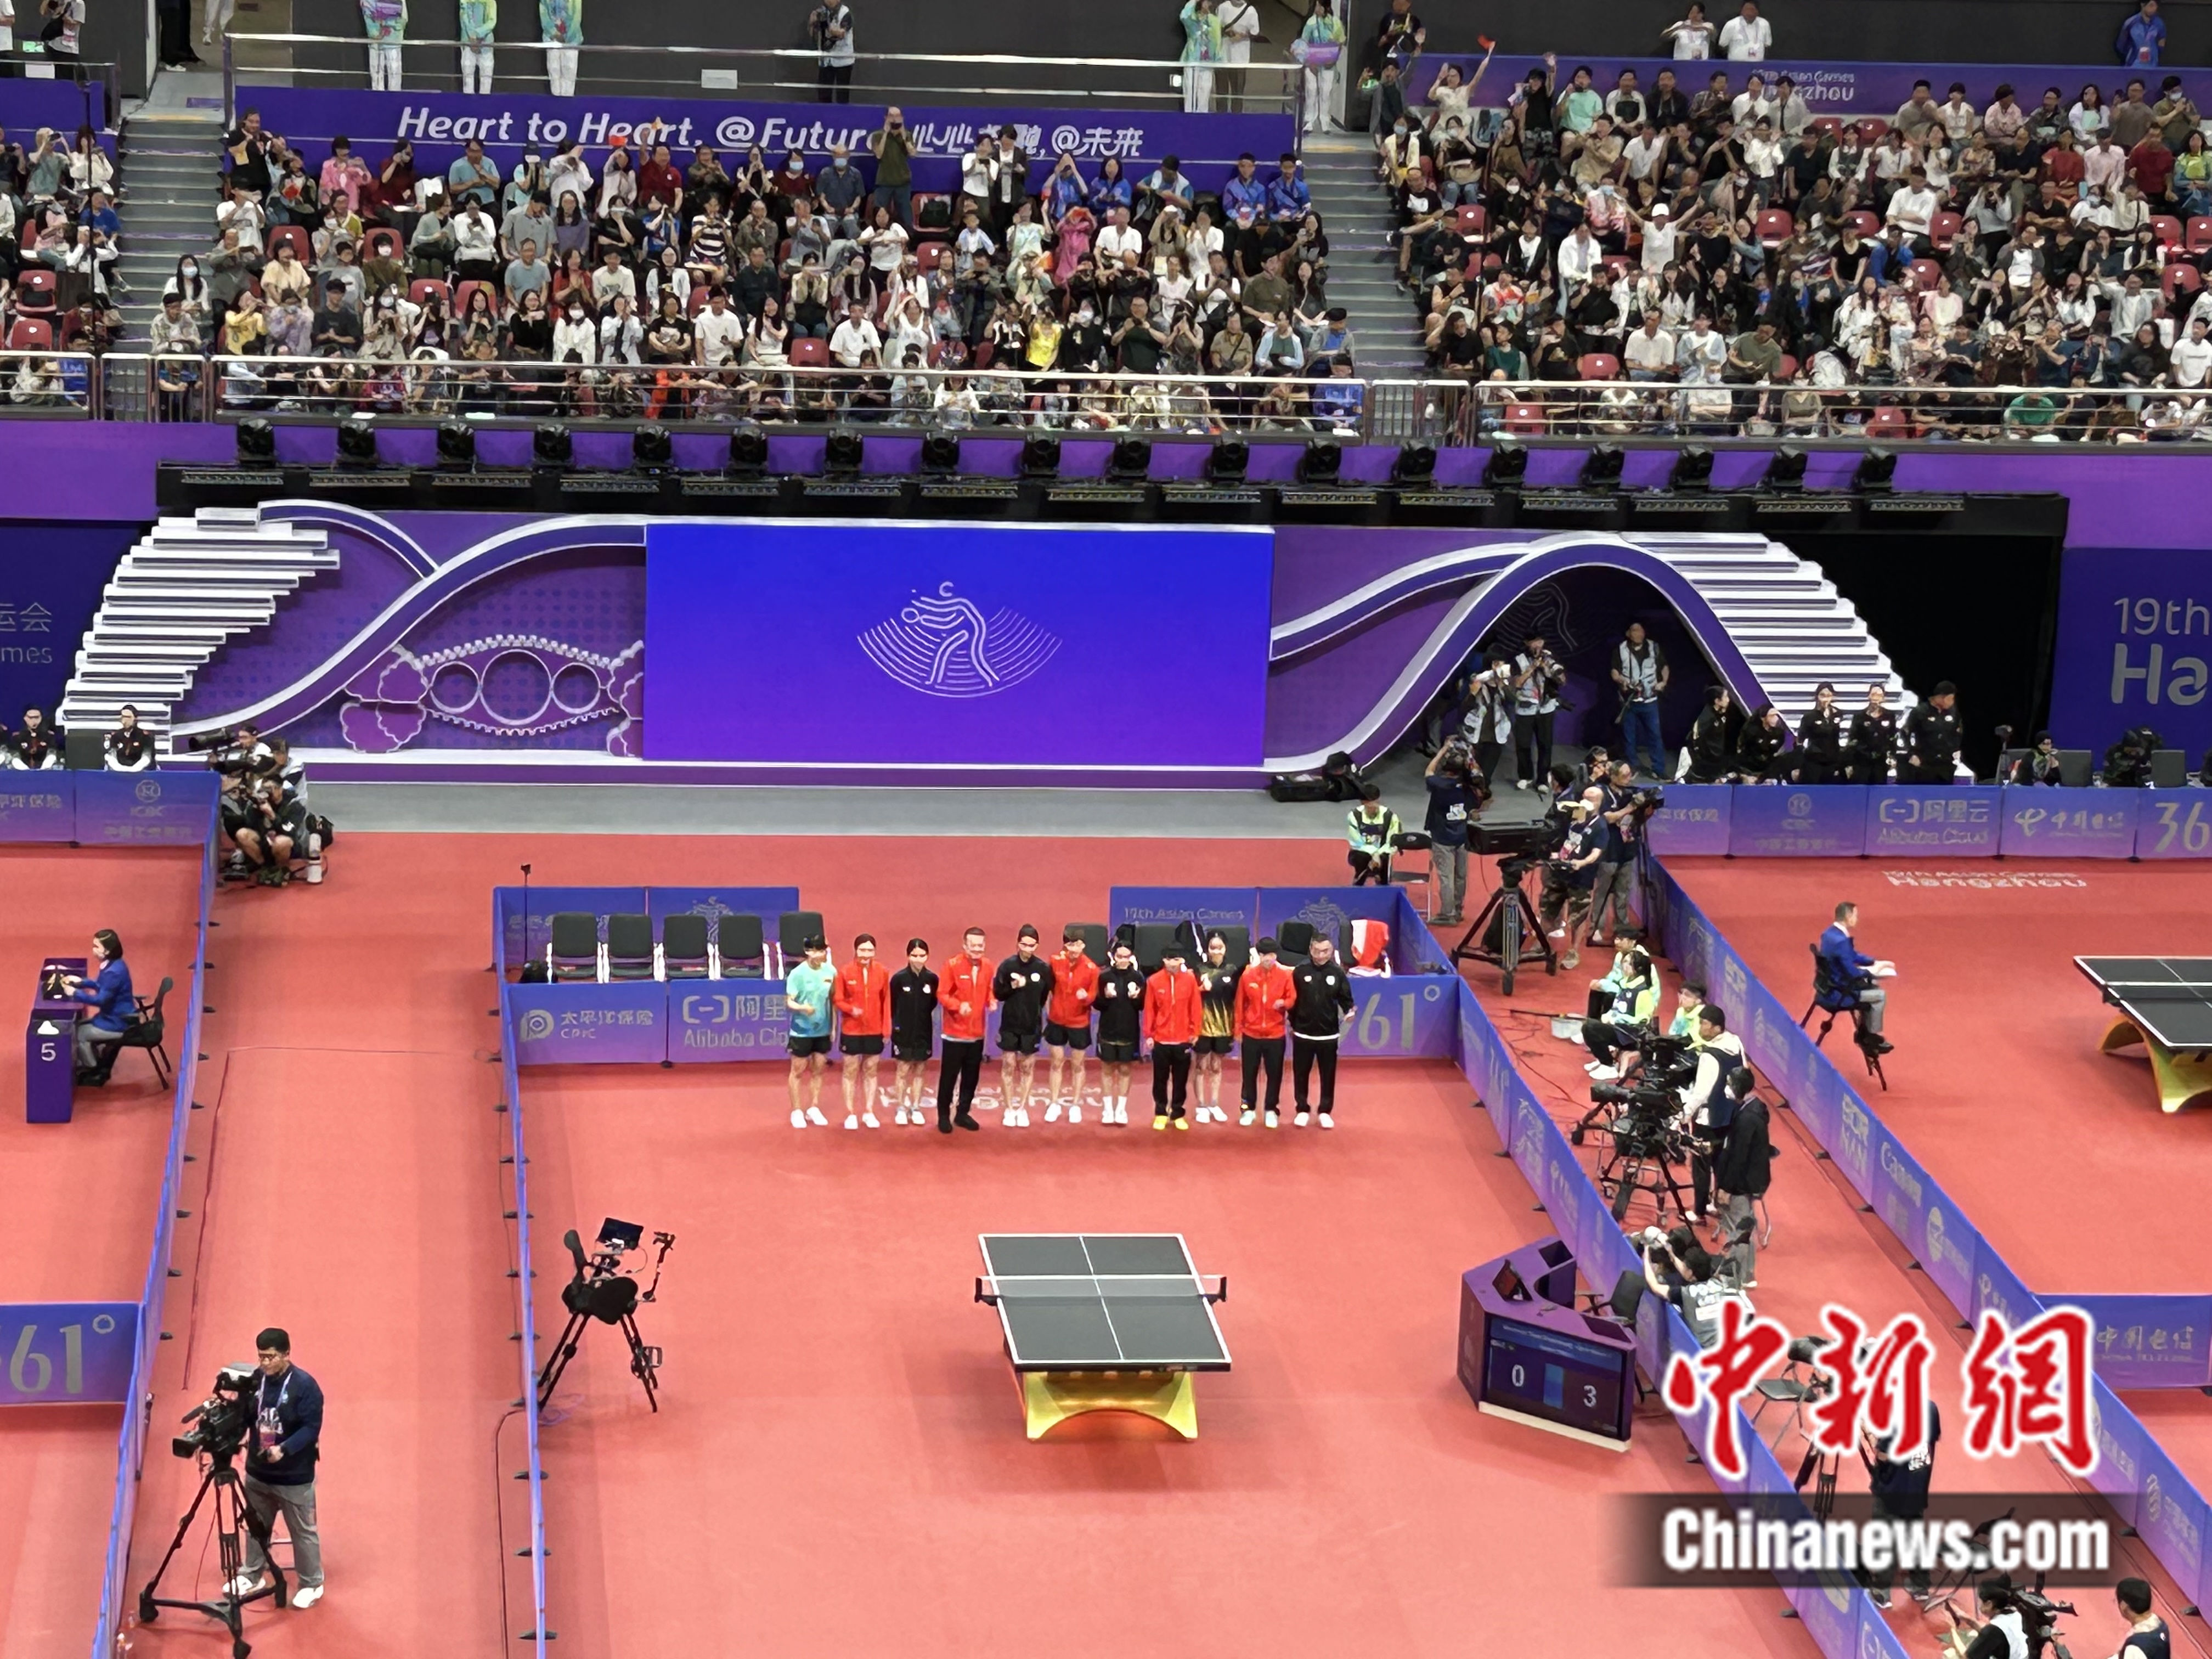 杭州亚运会乒乓球女团 中国队3:0战胜中国澳门队取得开